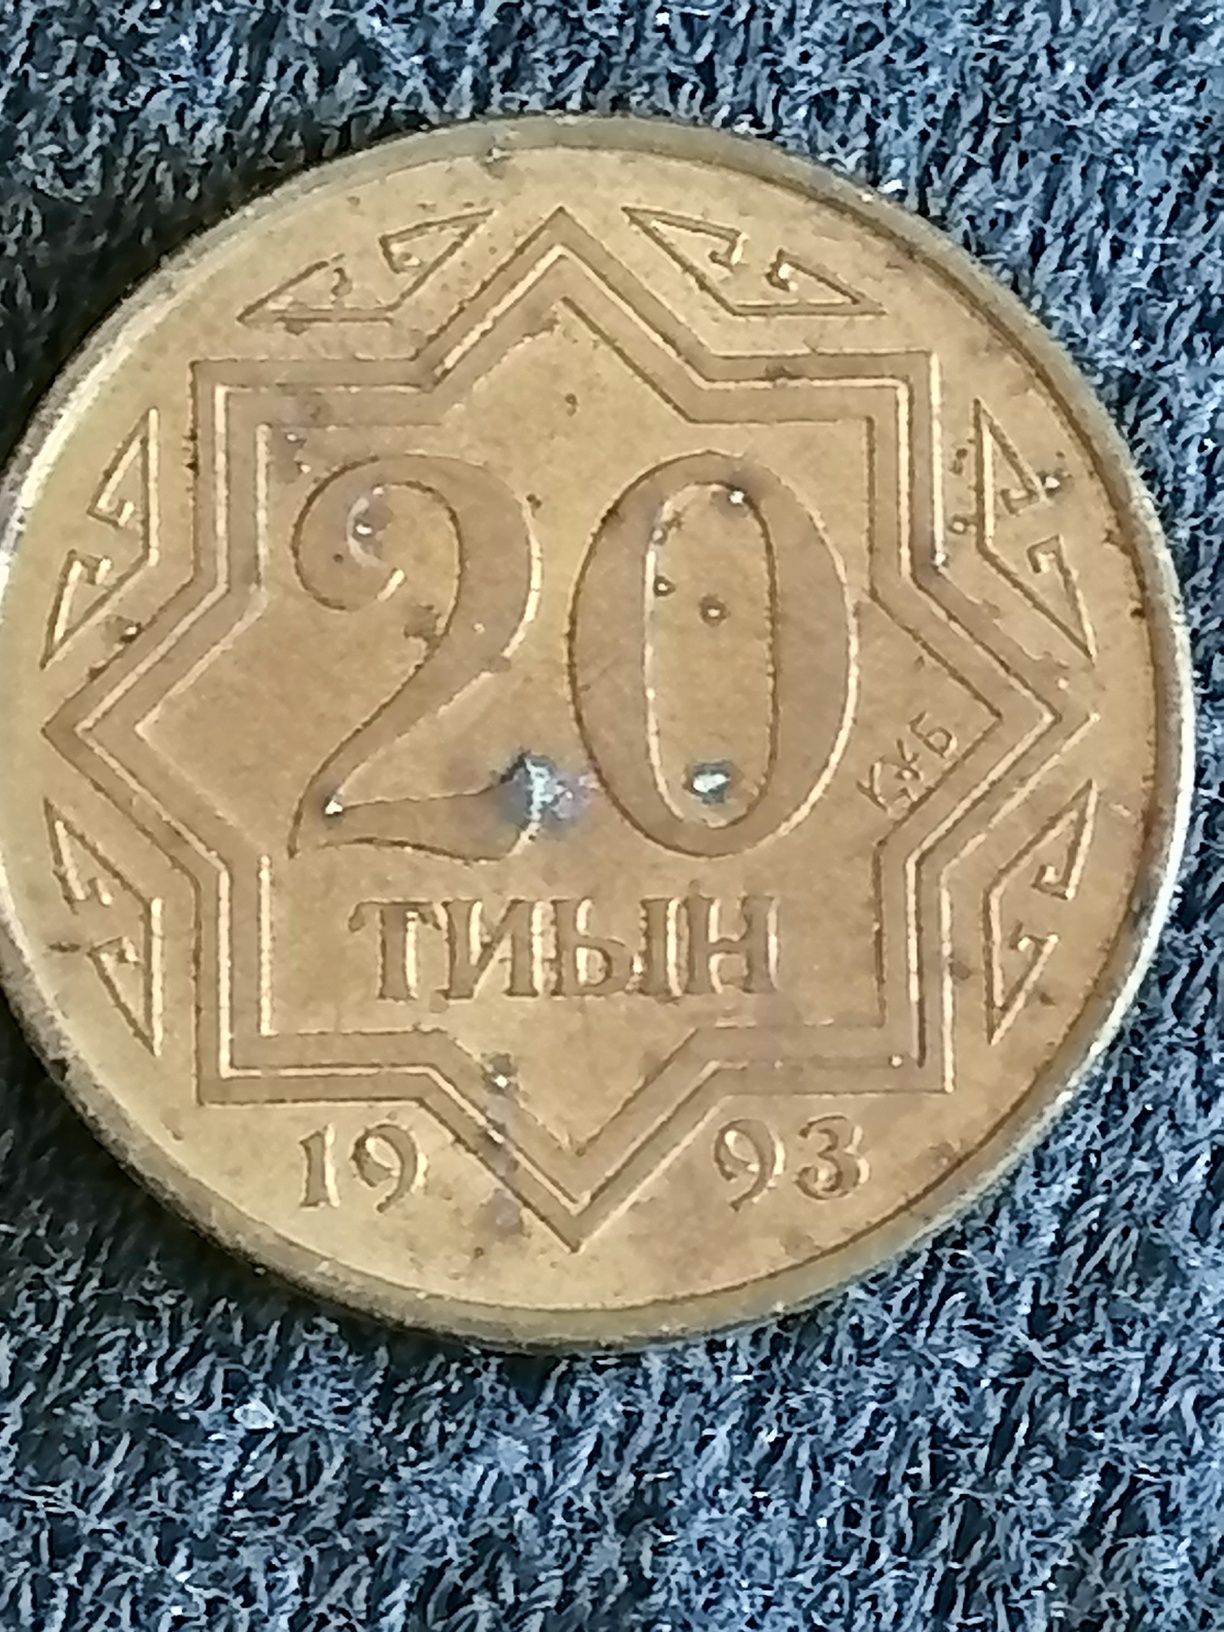 Казахстанские монеты 1993 года